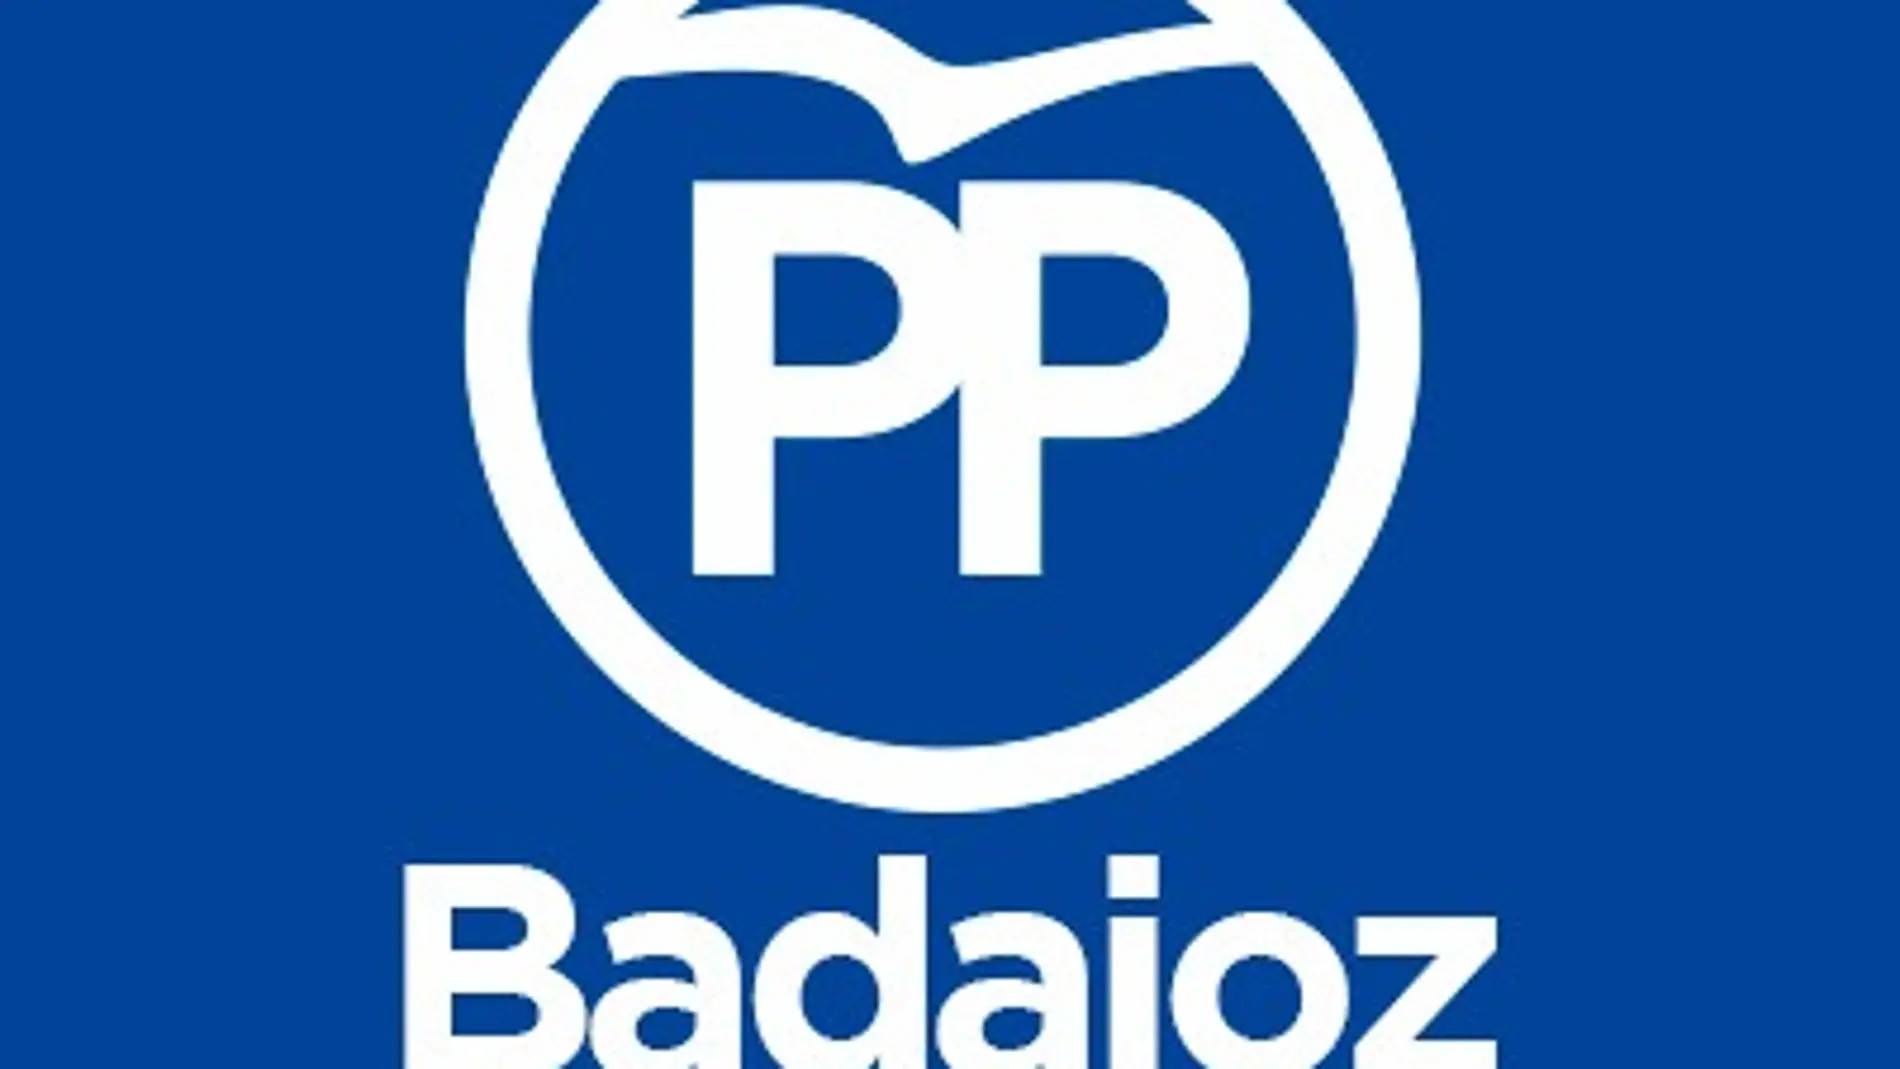 Manuel Naharro y Pedro Acedo optan a ser presidentes del PP en la provincia de Badajoz